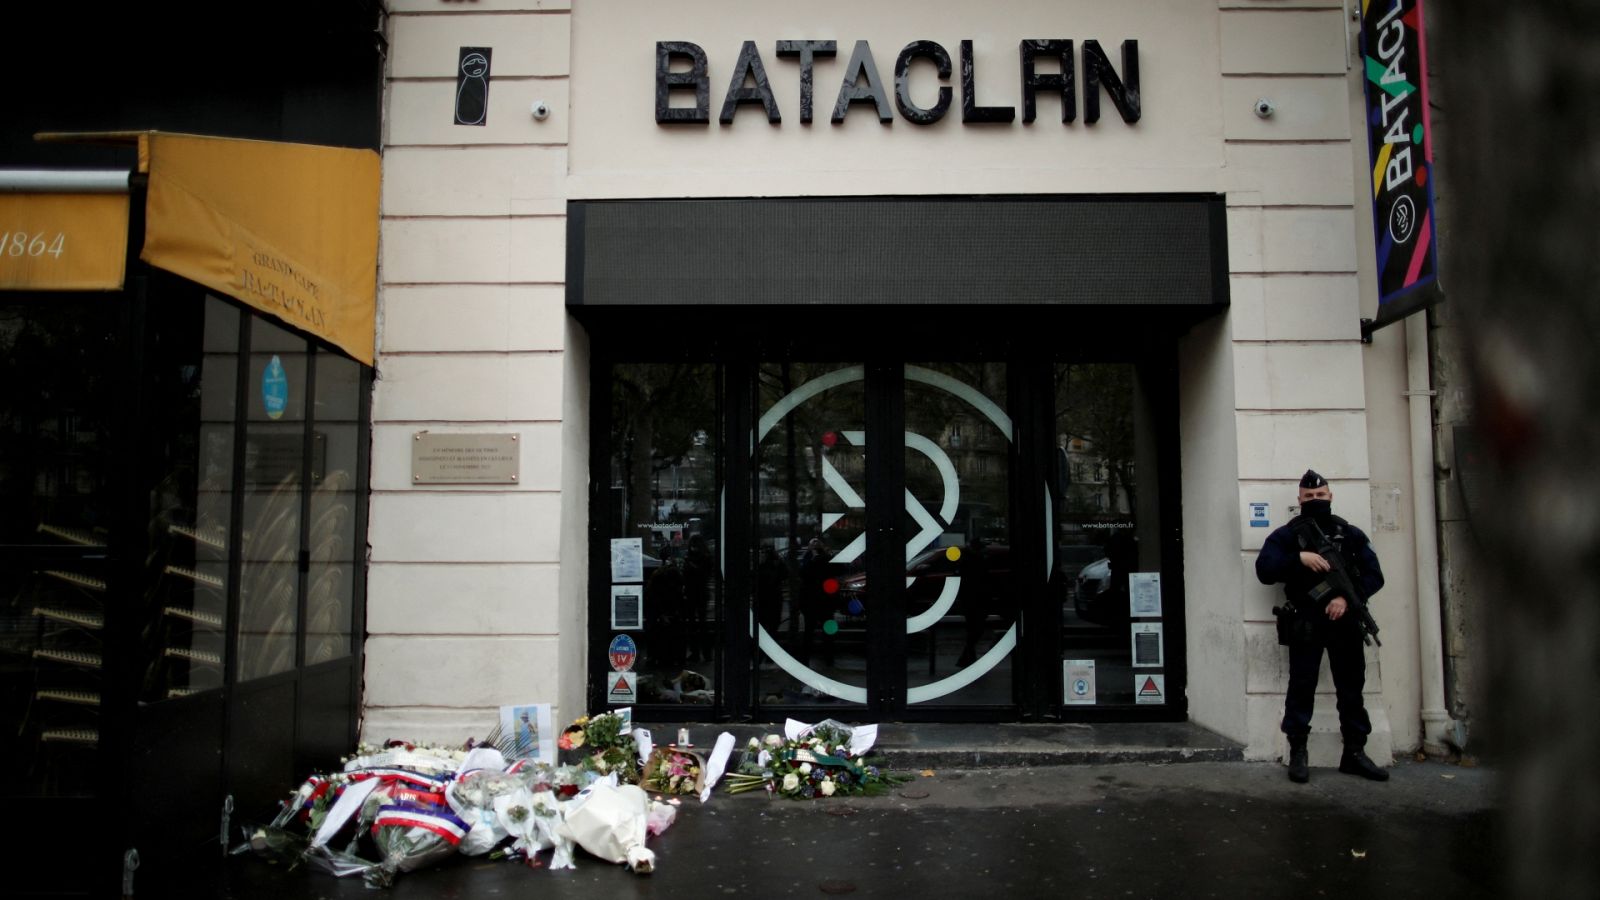 La madre del español asesinado en Bataclan, tras la condena a los acusados: "Me parece la sentencia más justa"